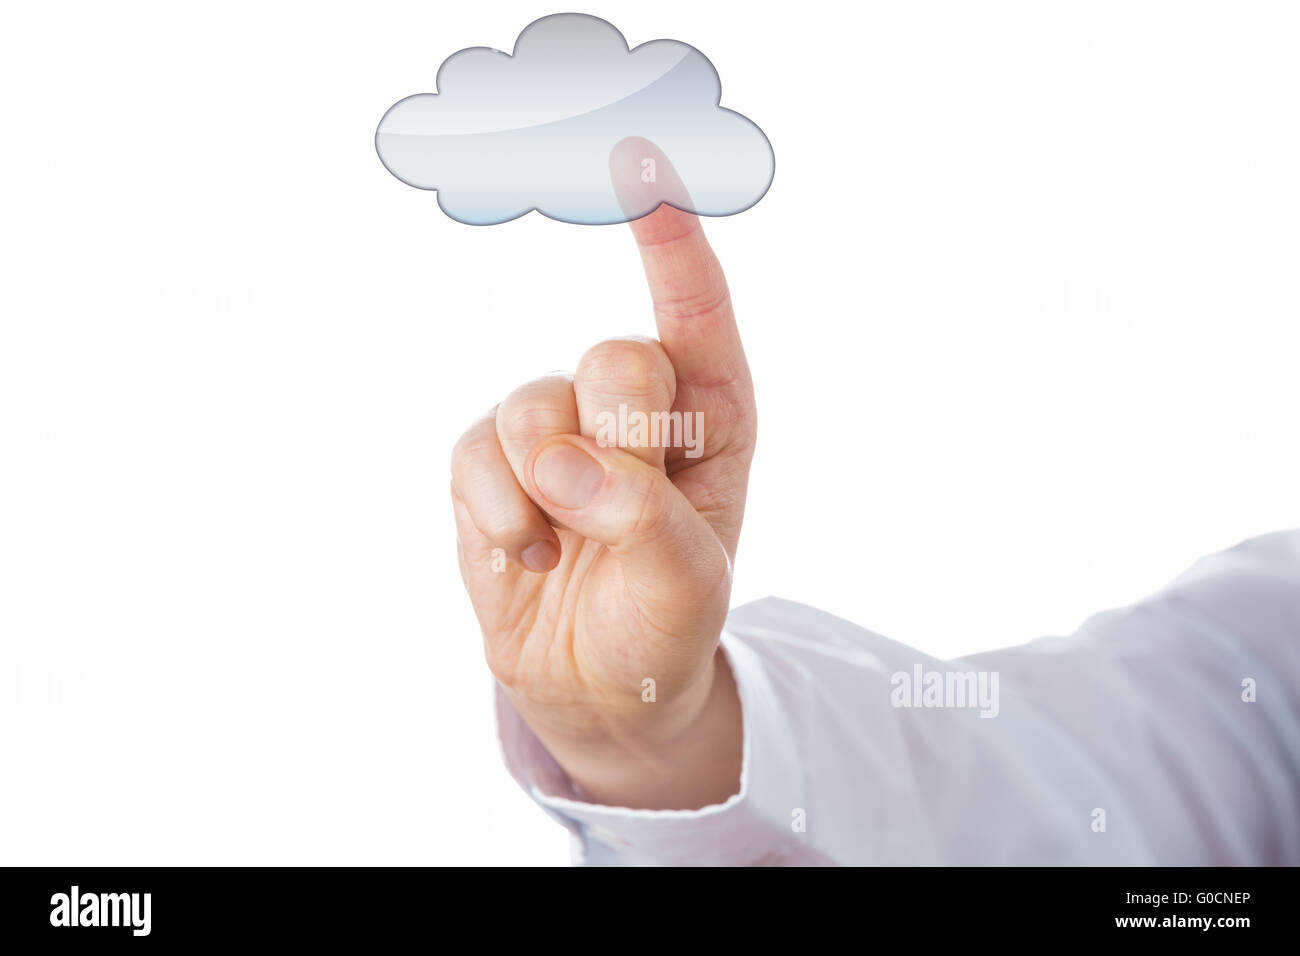 Ausschnitt eines männlichen Fingers berührt eine leere Wolkensymbol Stockfoto